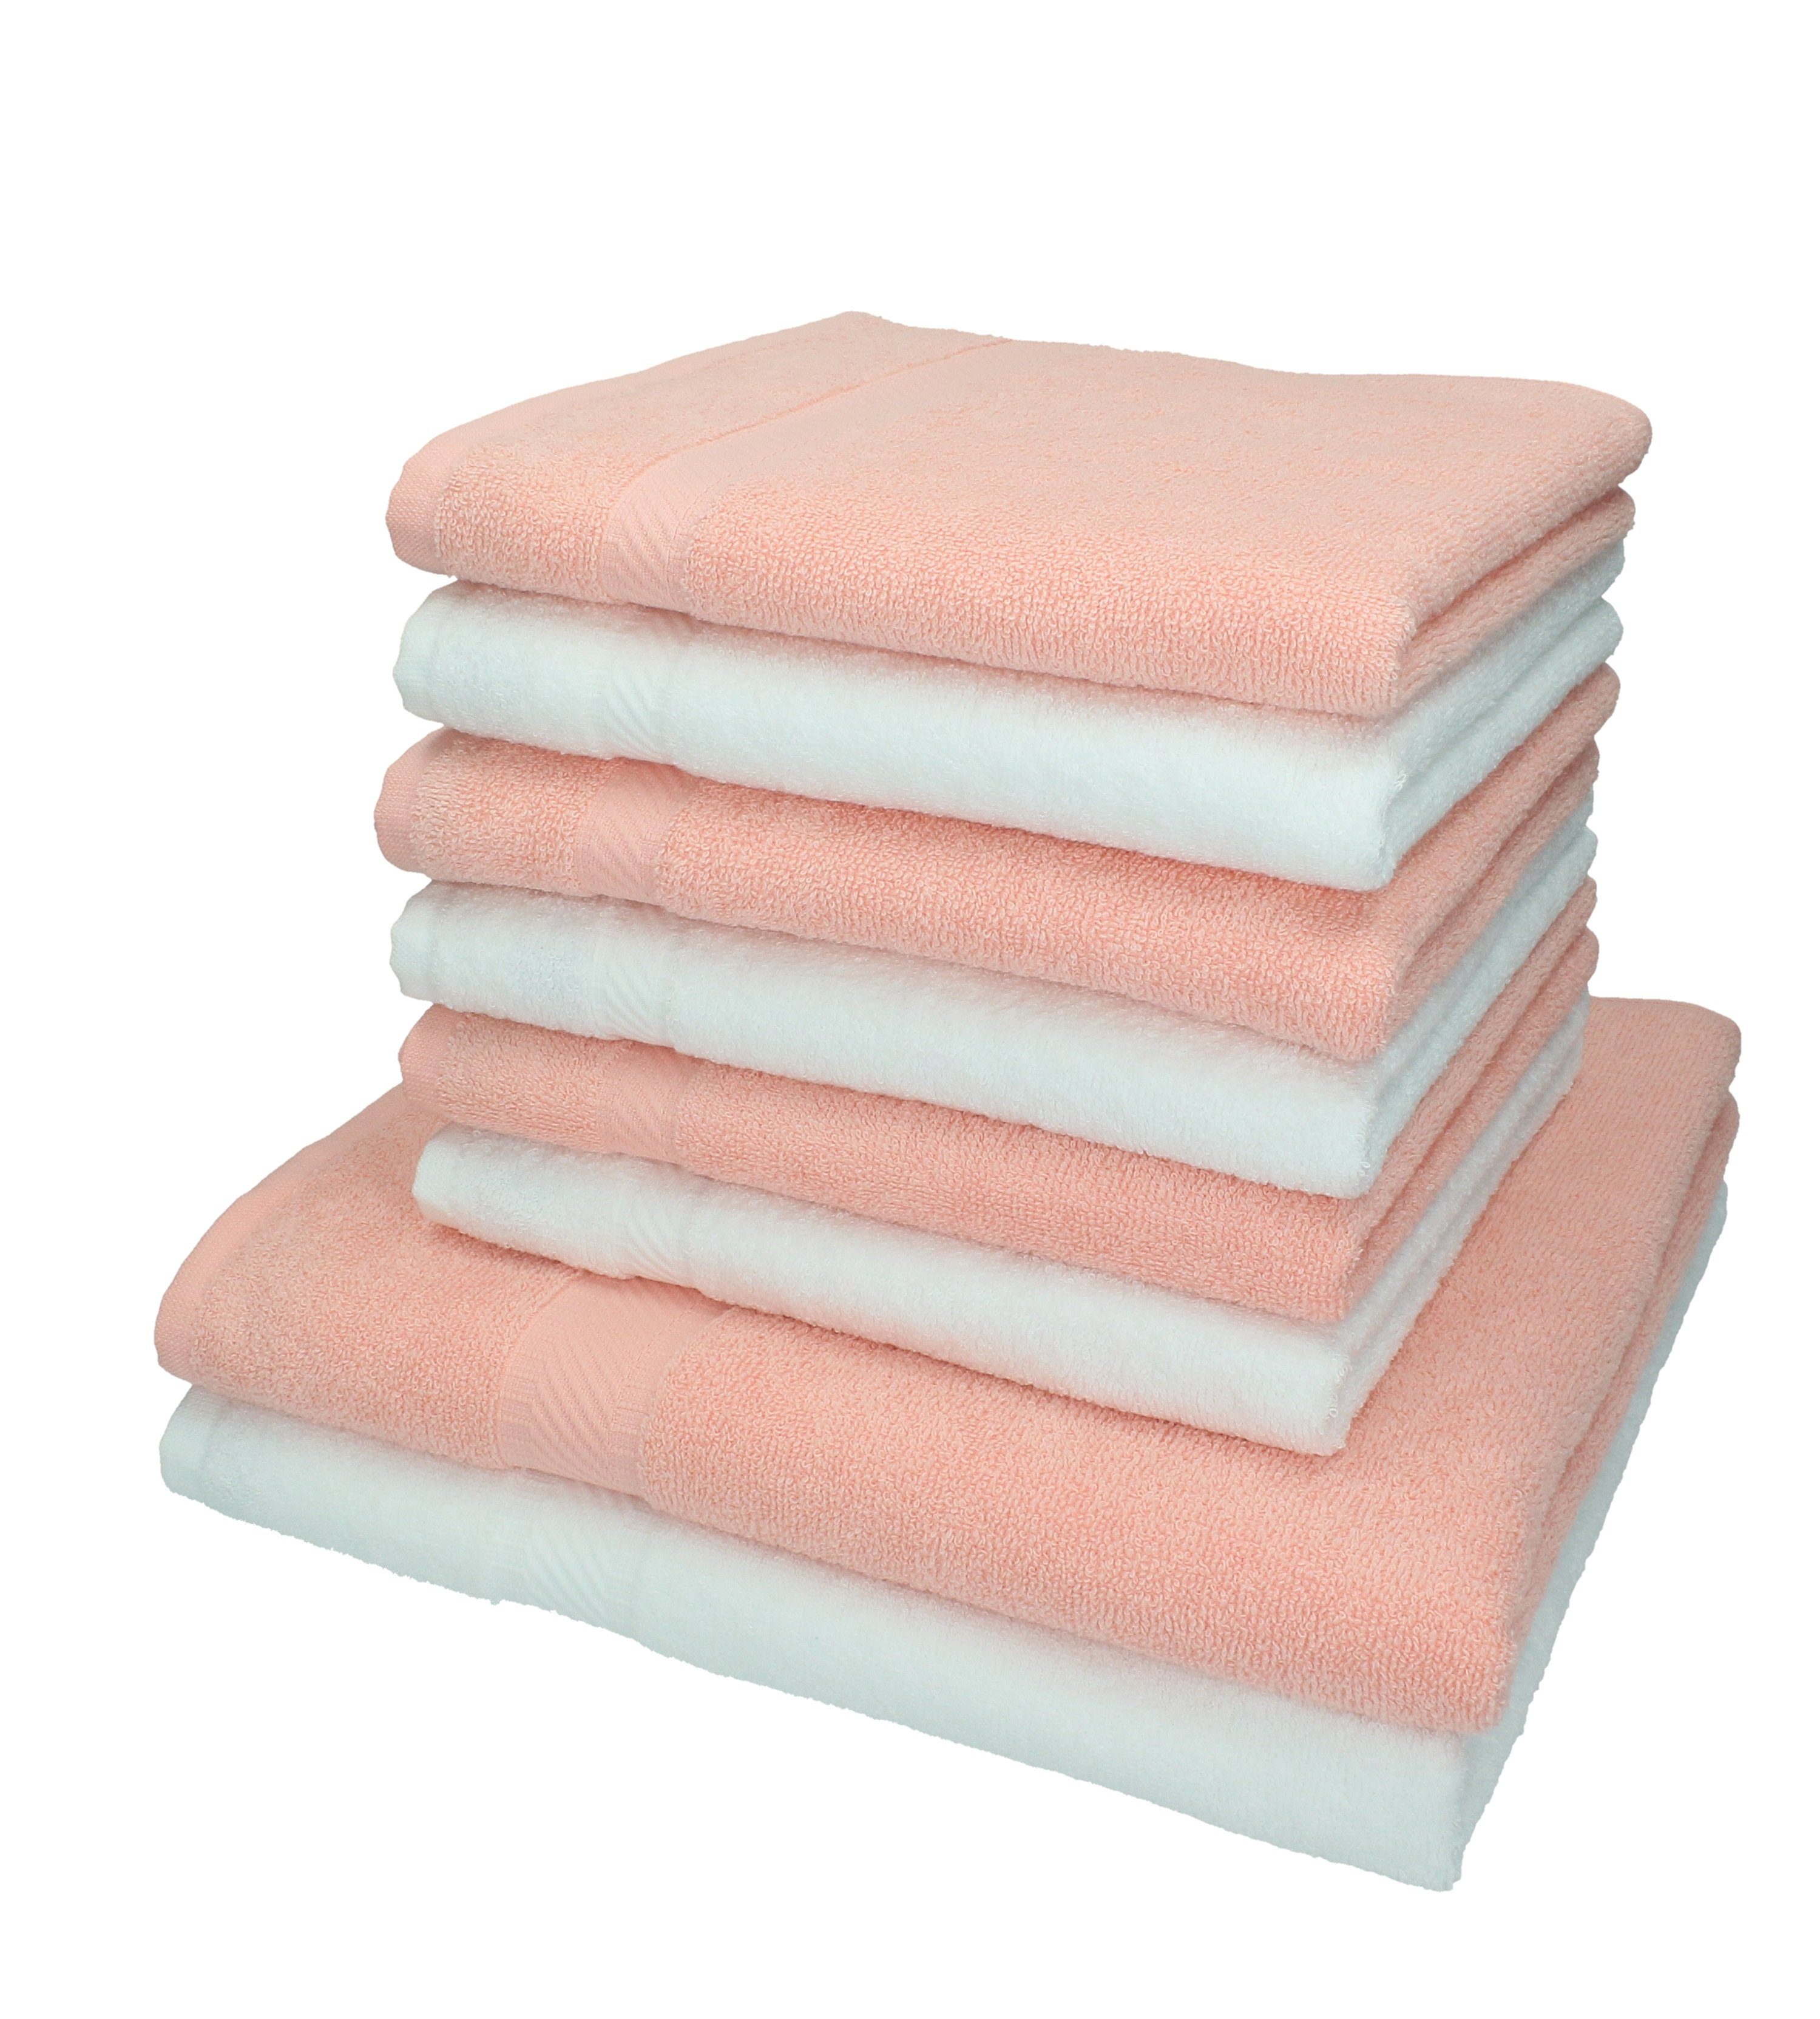 Betz Handtuch Set 8-tlg. Handtuch-Set Palermo Farbe weiß und apricot, 100% Baumwolle | Handtuch-Sets